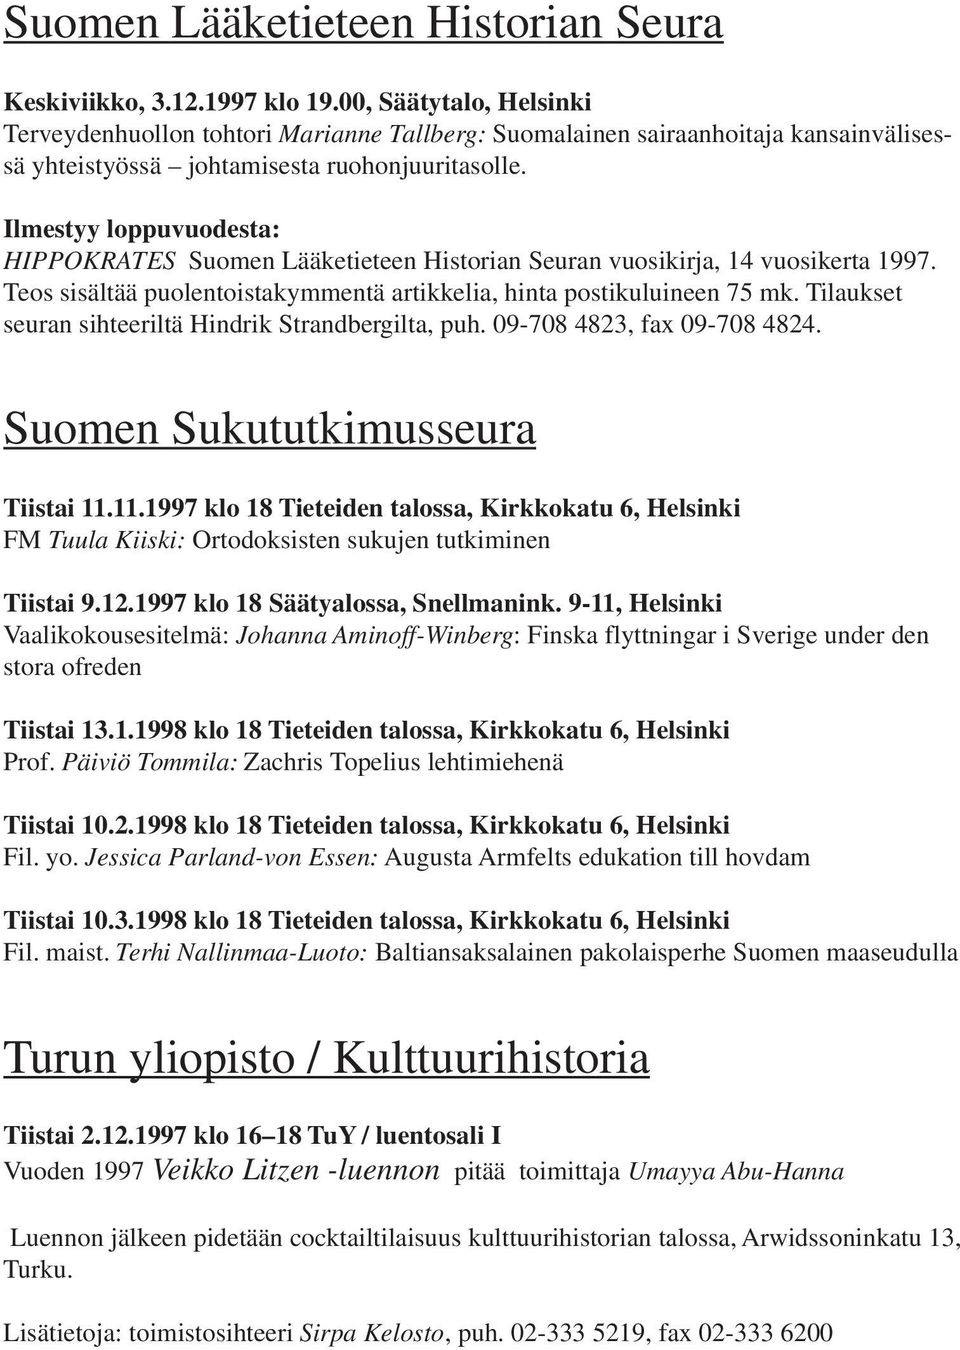 Ilmestyy loppuvuodesta: HIPPOKRATES Suomen Lääketieteen Historian Seuran vuosikirja, 14 vuosikerta 1997. Teos sisältää puolentoistakymmentä artikkelia, hinta postikuluineen 75 mk.